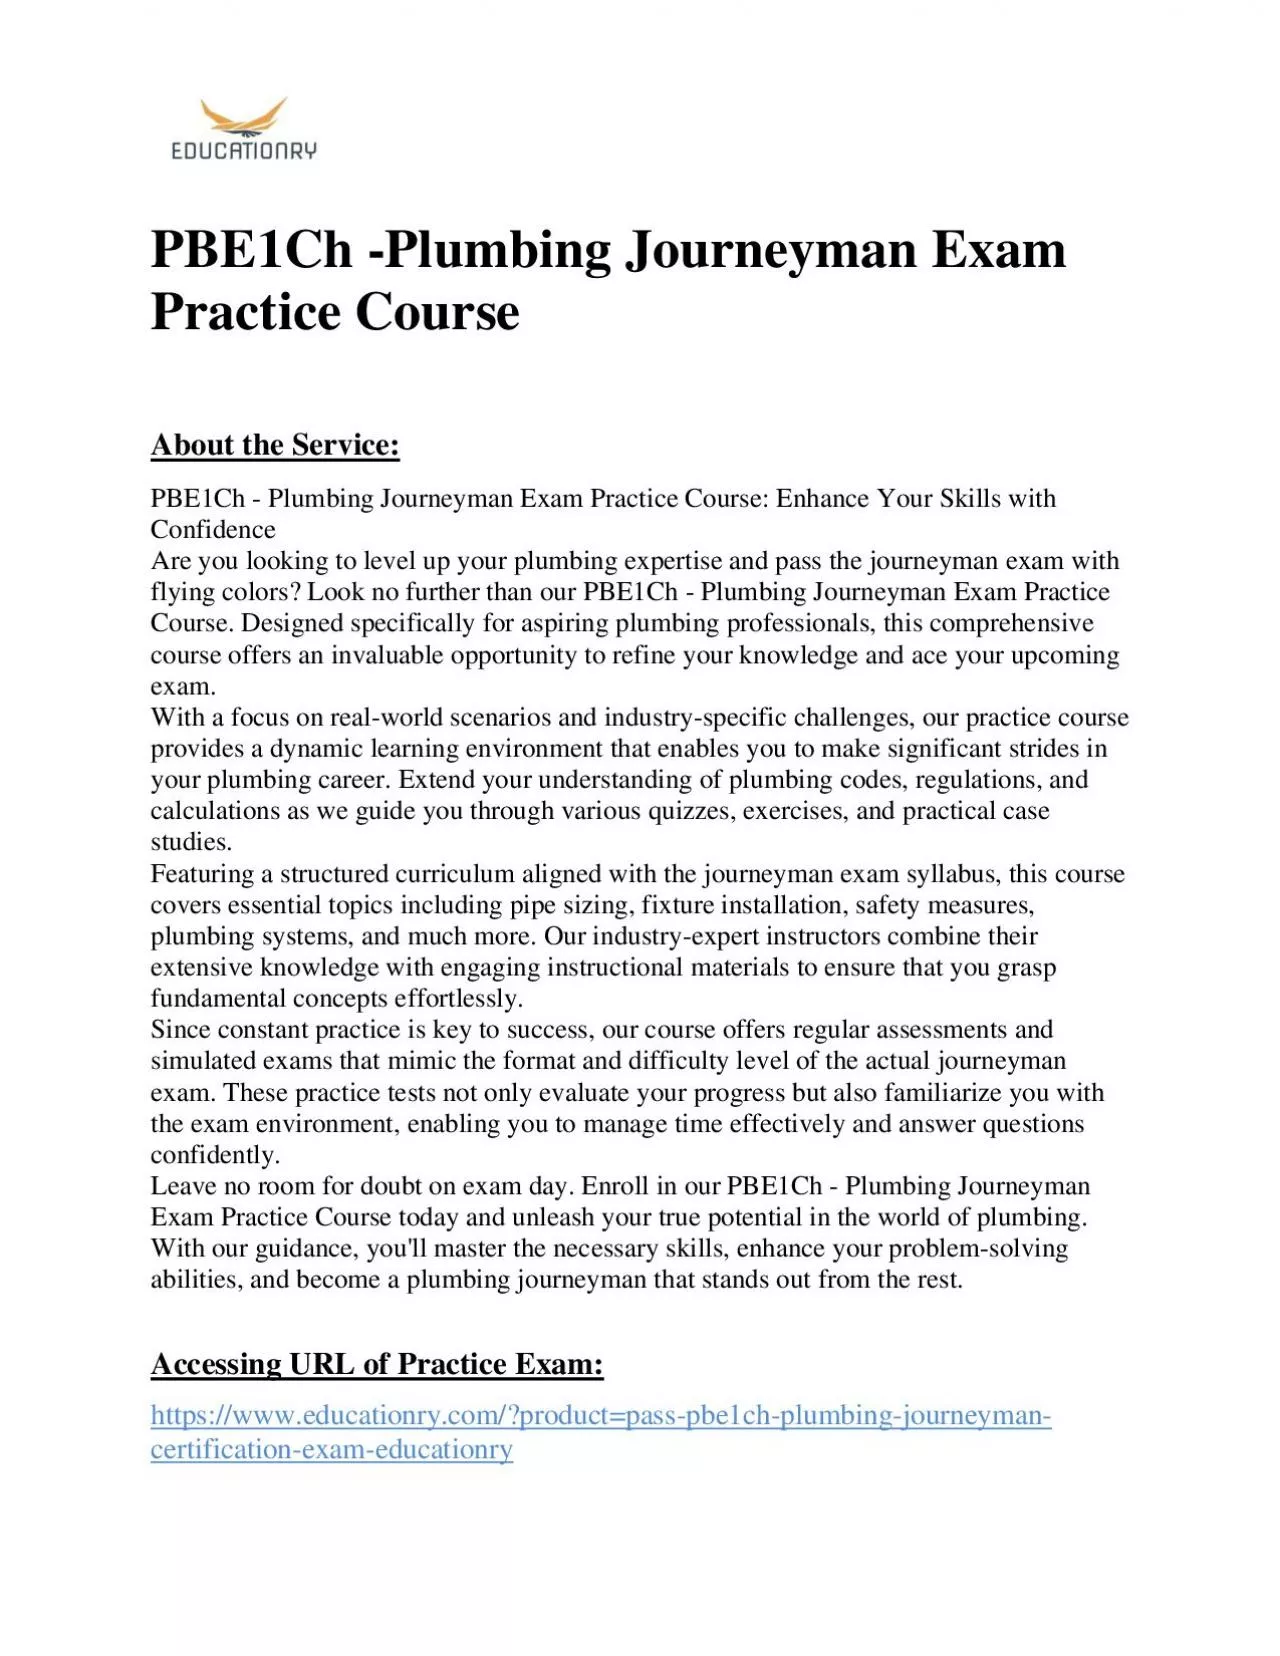 PBE1Ch -Plumbing Journeyman Exam Practice Course